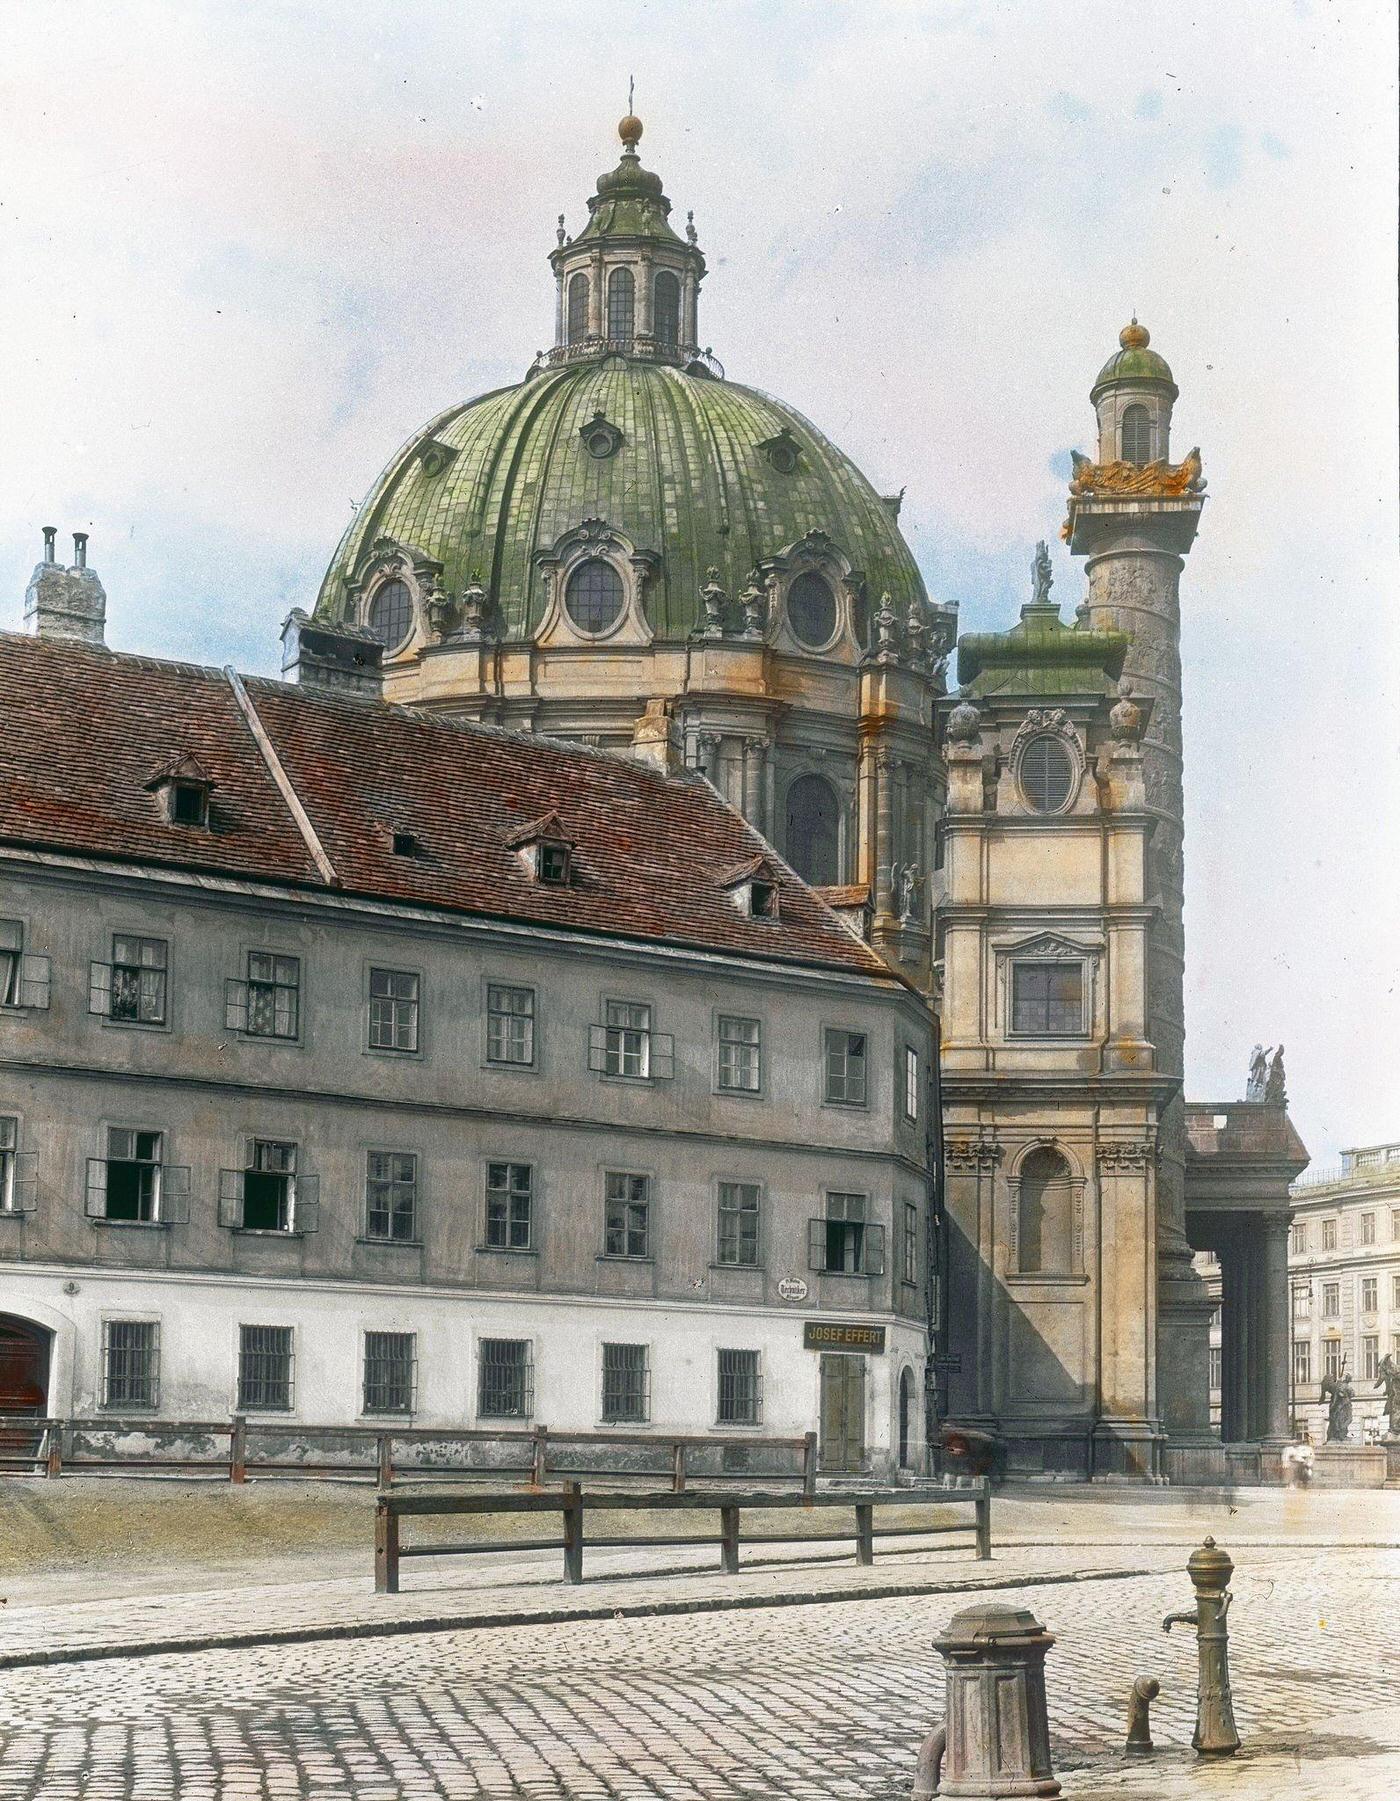 The Karlskirche (St. Charles' Church) located on Karlsplatz. Wieden. Vienna, 4th district, 1900.